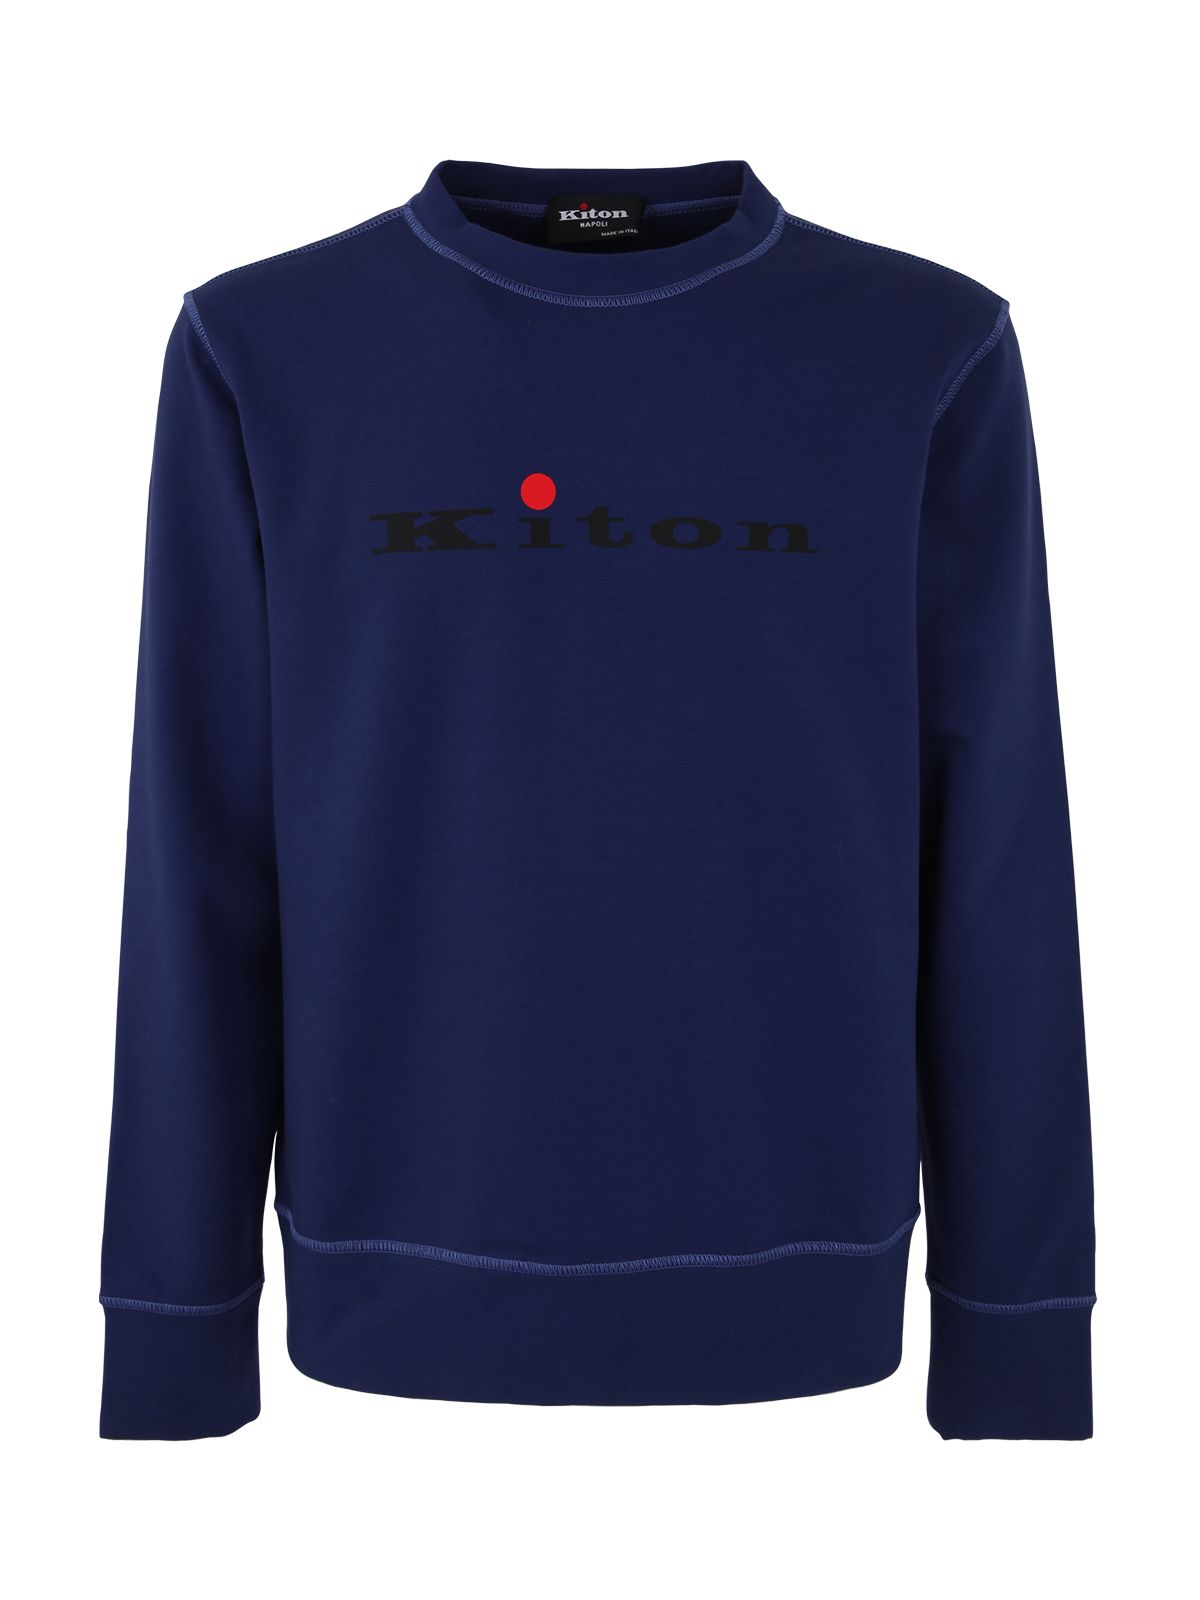 Shop Kiton Crew Neck Cotton Sweater